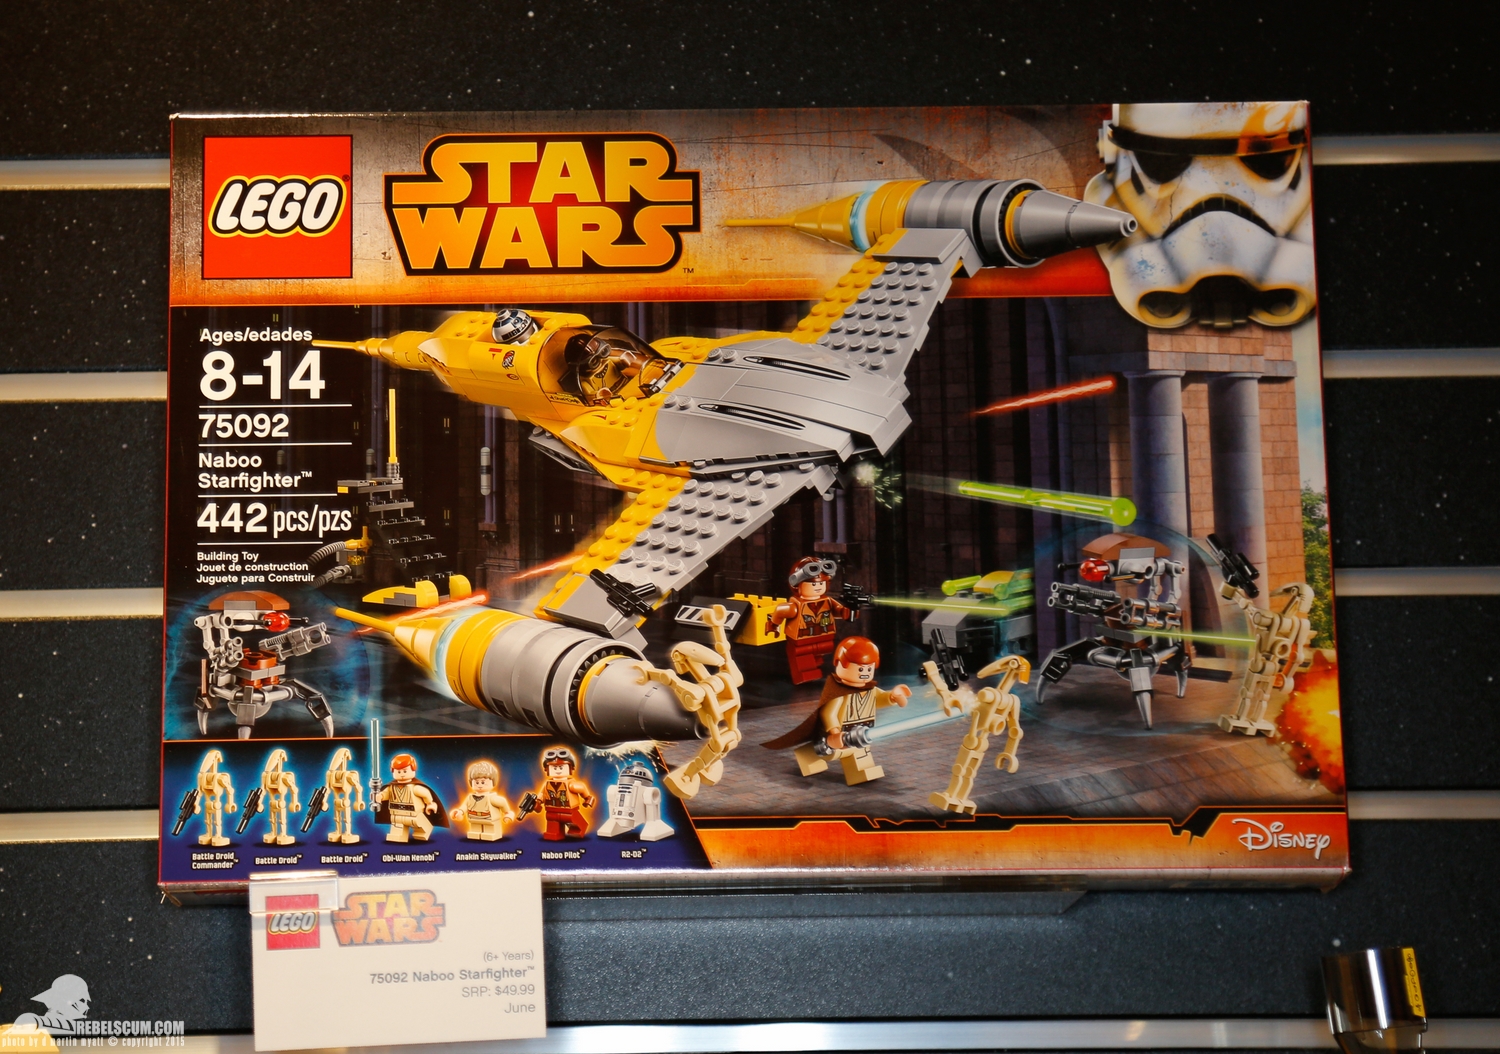 2015-International-Toy-Fair-Star-Wars-Lego-079.jpg